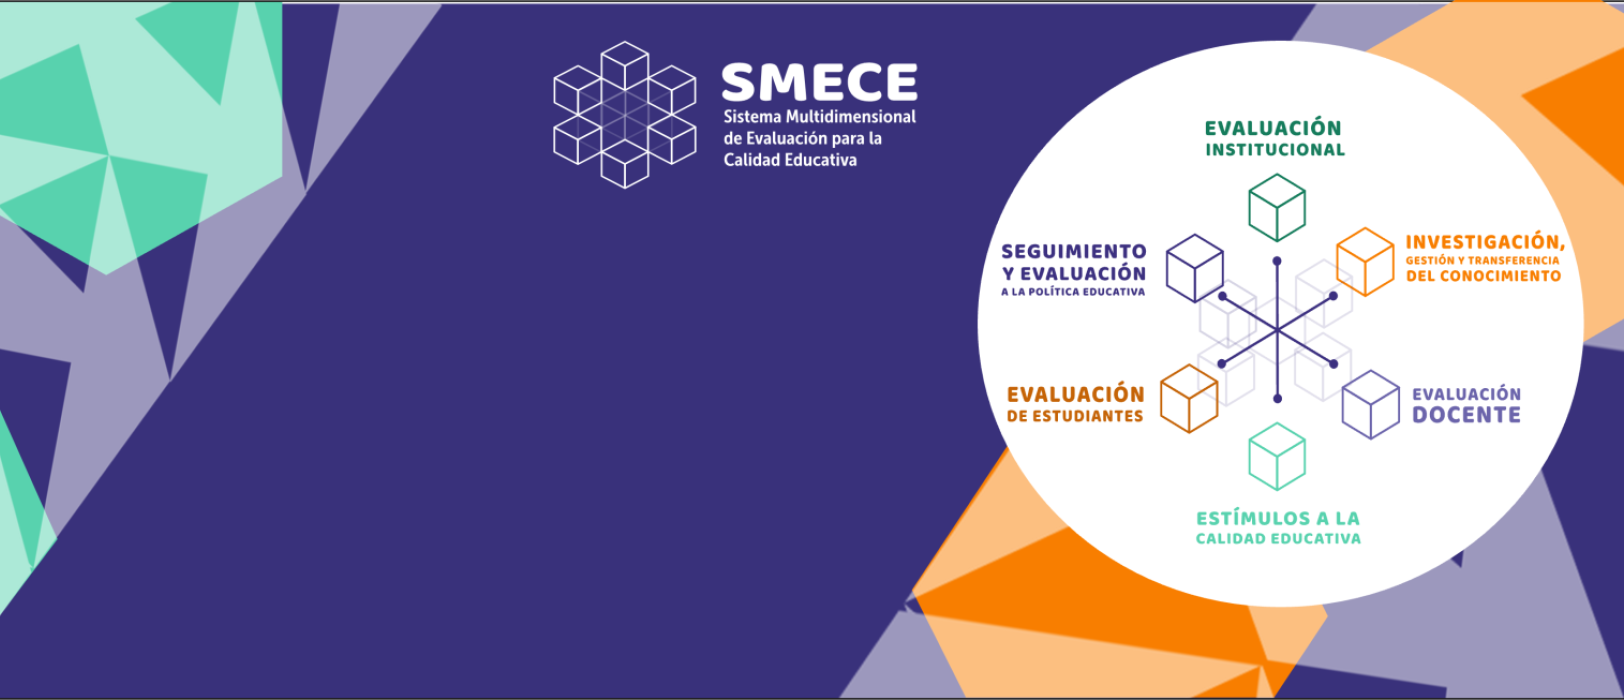 Sistema Multidimensional de Evaluación para la Calidad Educativa SMECE